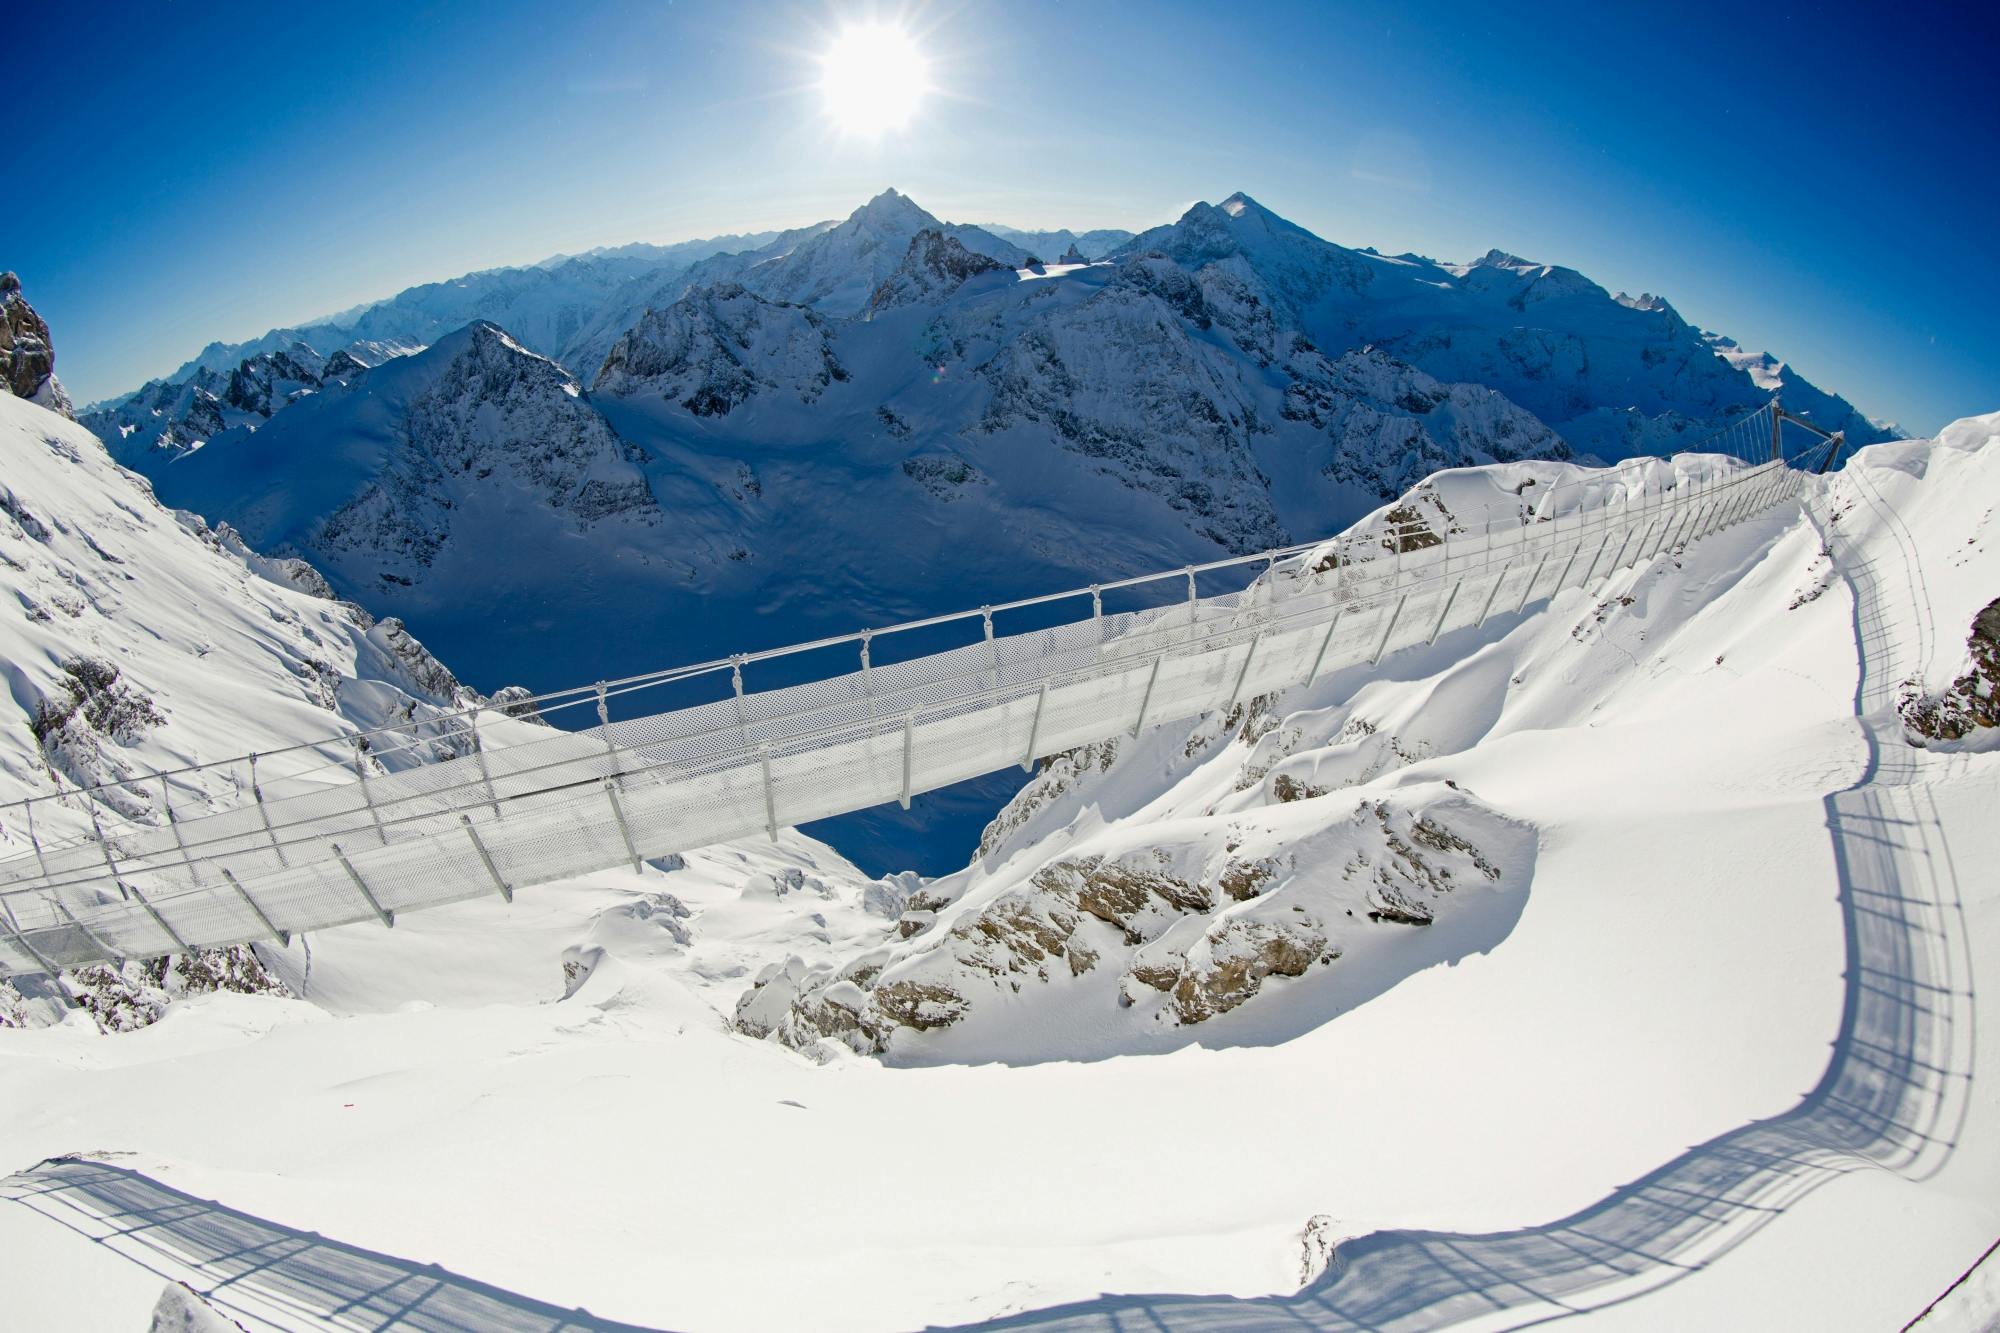 Halve dagtrip naar de eeuwige sneeuw en gletsjer van Mount Titlis vanuit Luzern